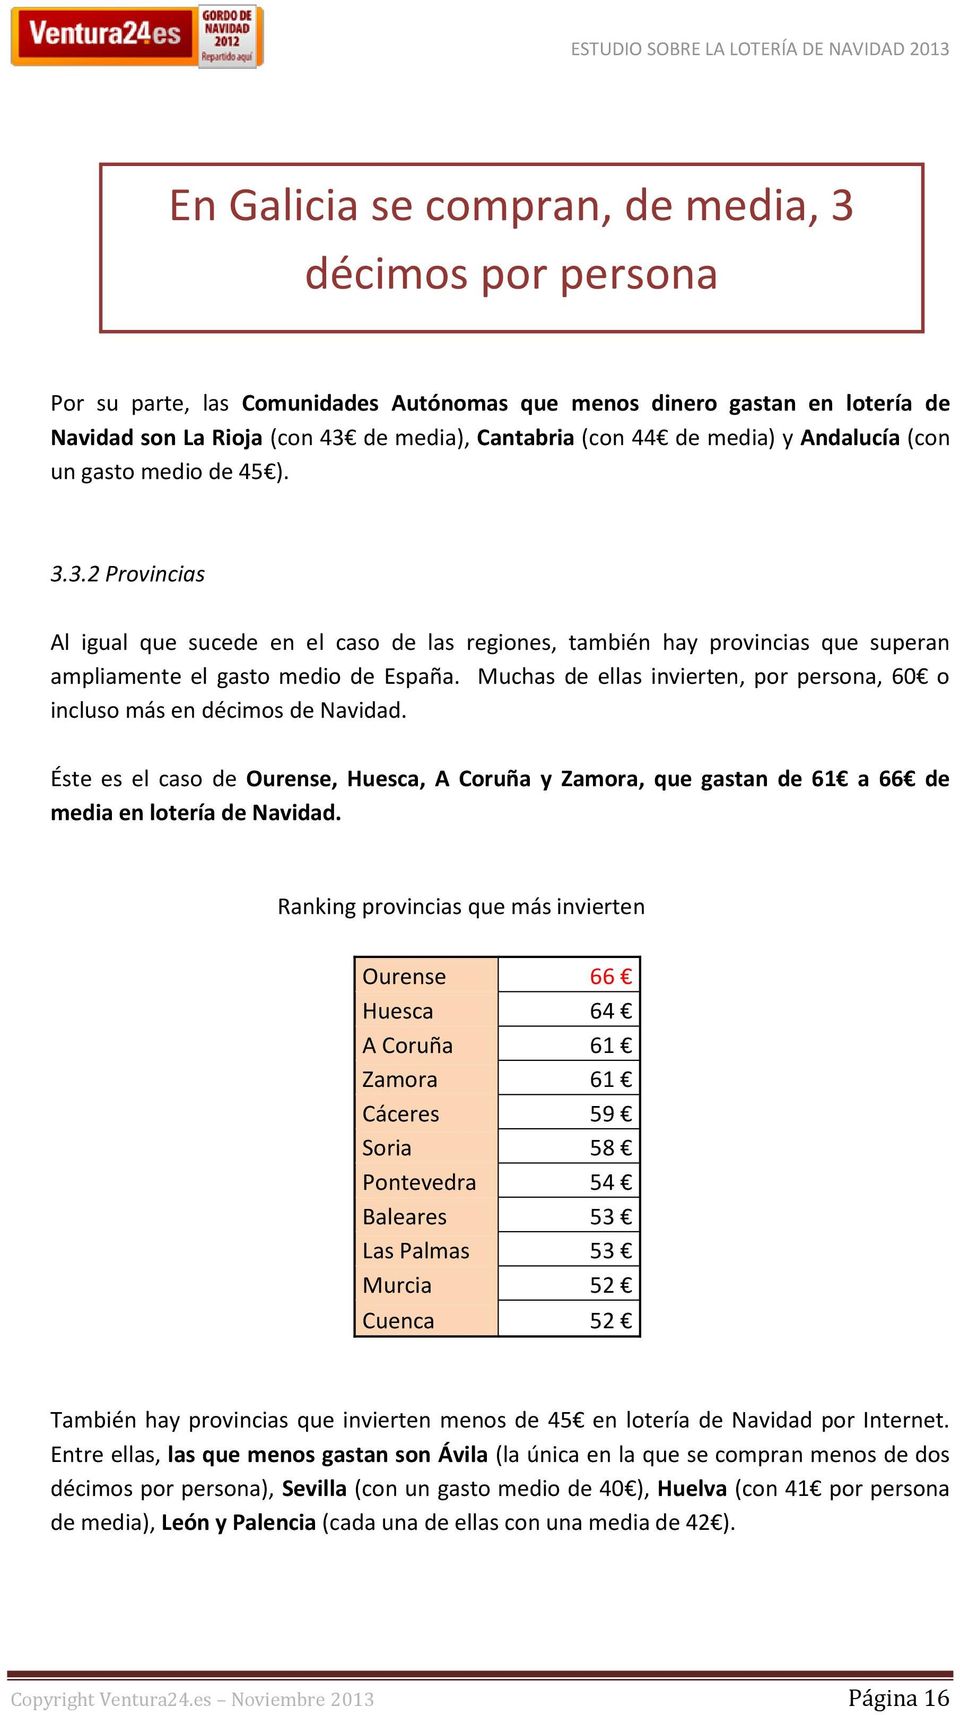 Muchas de ellas invierten, por persona, 60 o incluso más en décimos de Navidad. Éste es el caso de Ourense, Huesca, A Coruña y Zamora, que gastan de 61 a 66 de media en lotería de Navidad.